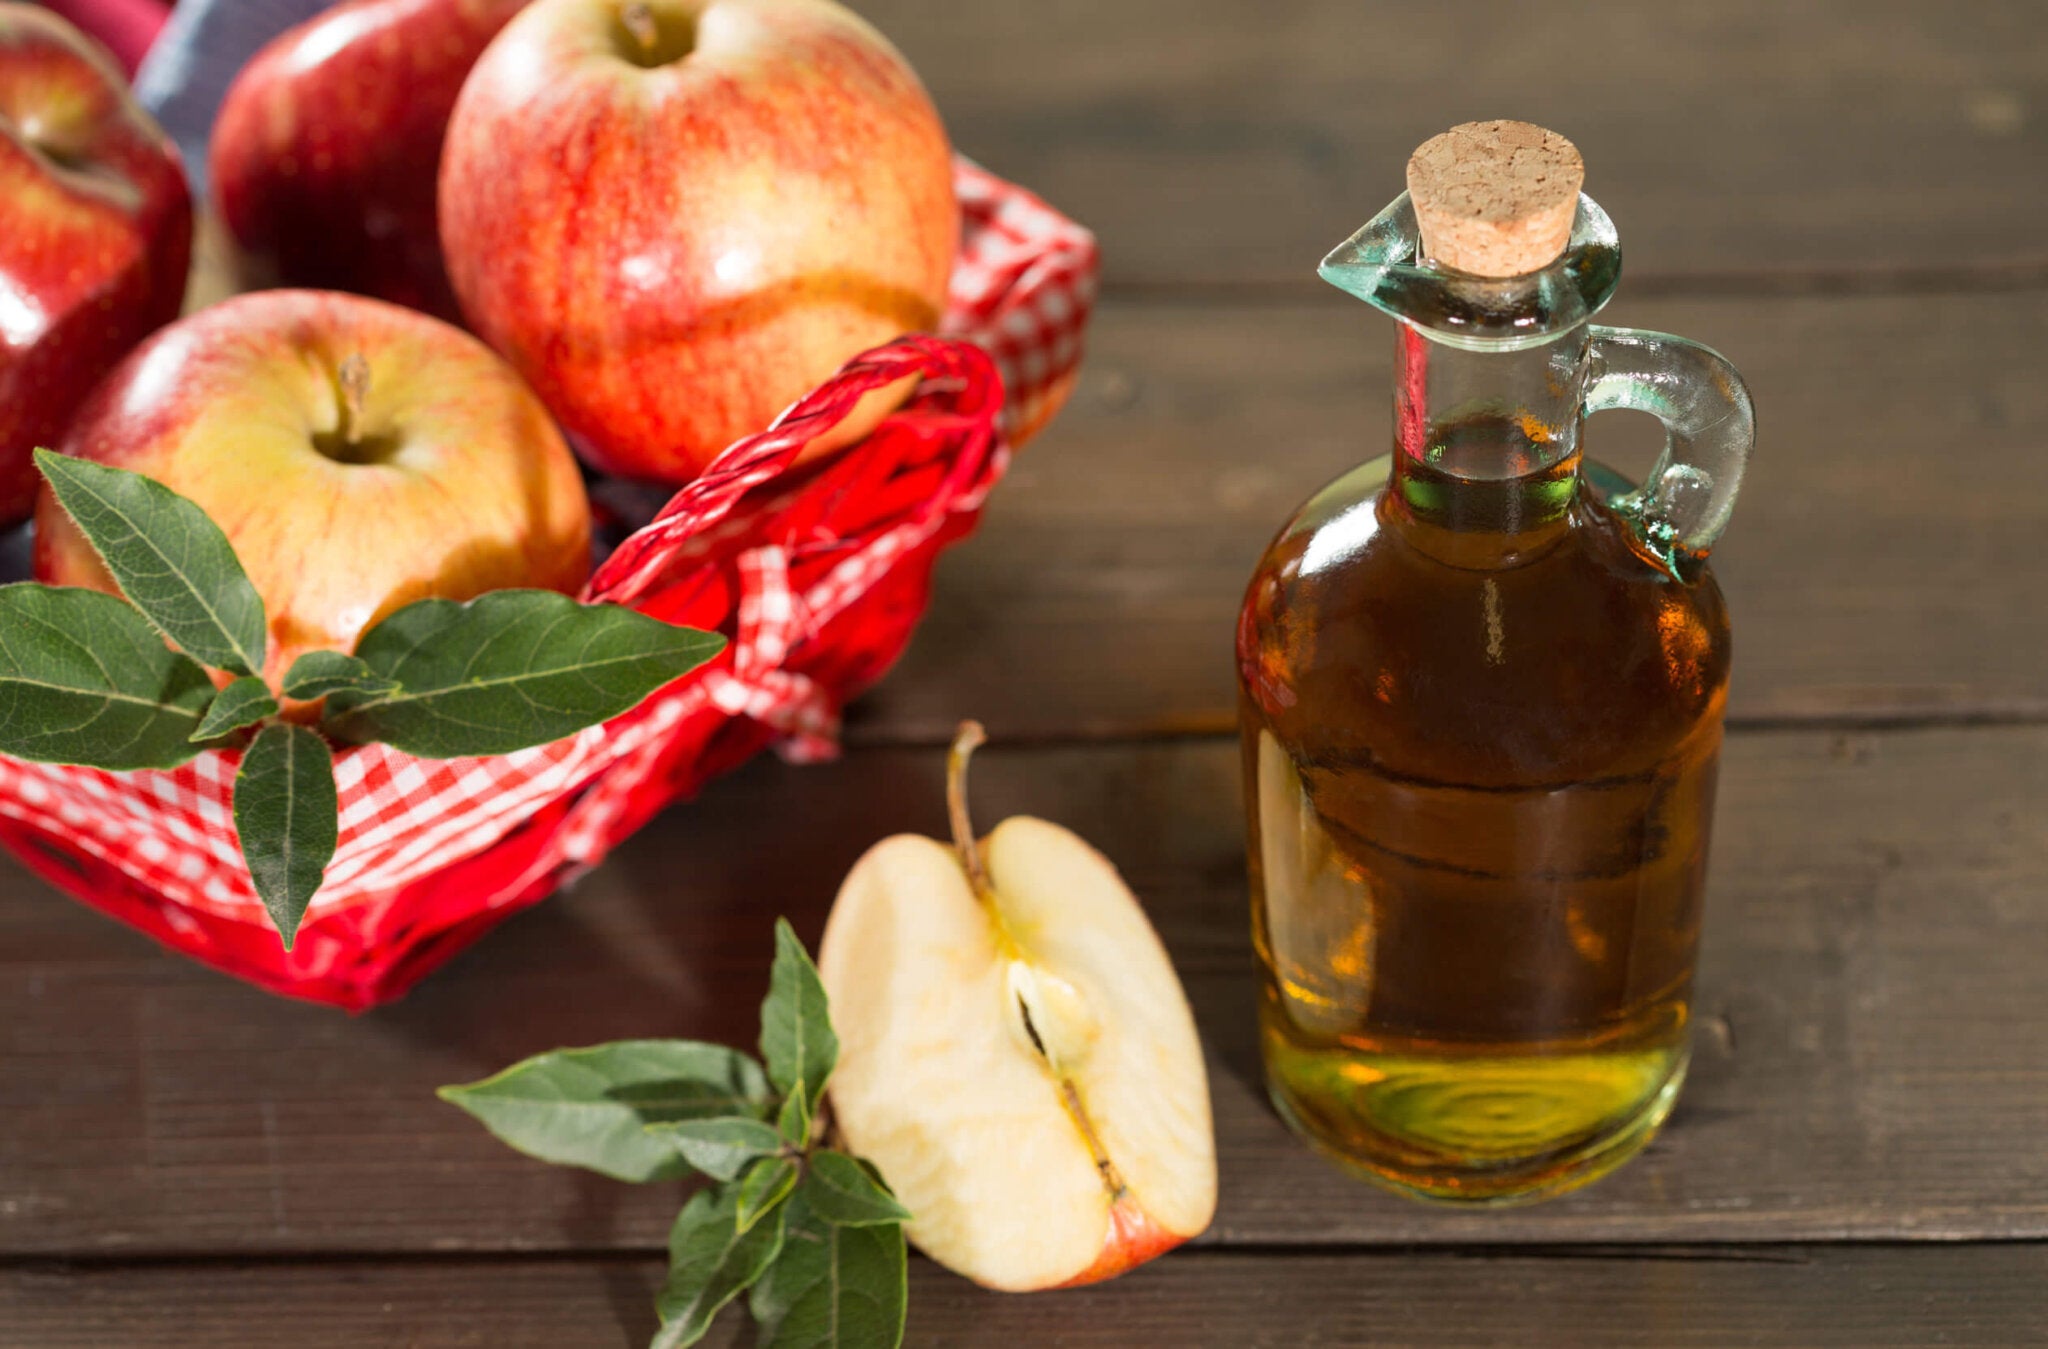 Los 8 beneficios de consumir una cucharada de vinagre de manzana al día -  Mejor con Salud